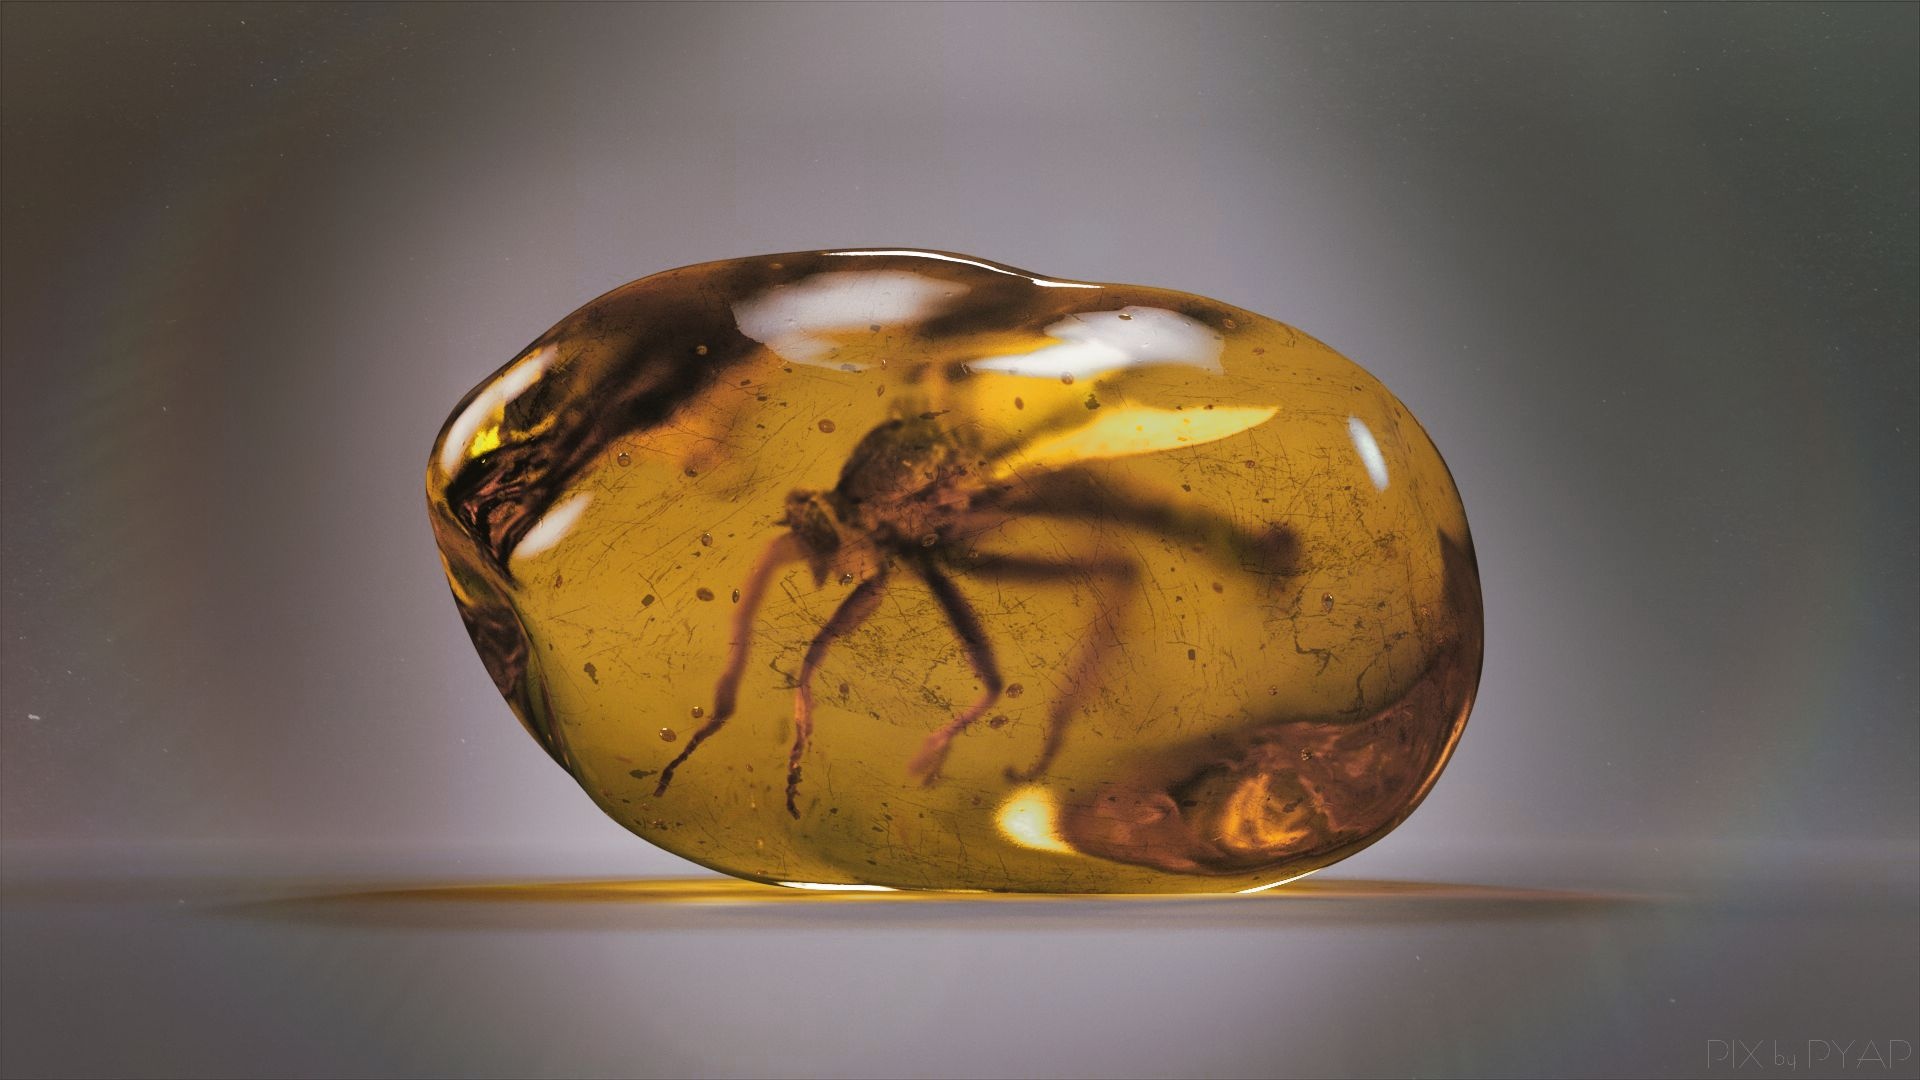 Insectes fossiles dans de l'ambre PYAP ONLINE. FR 1920x1080